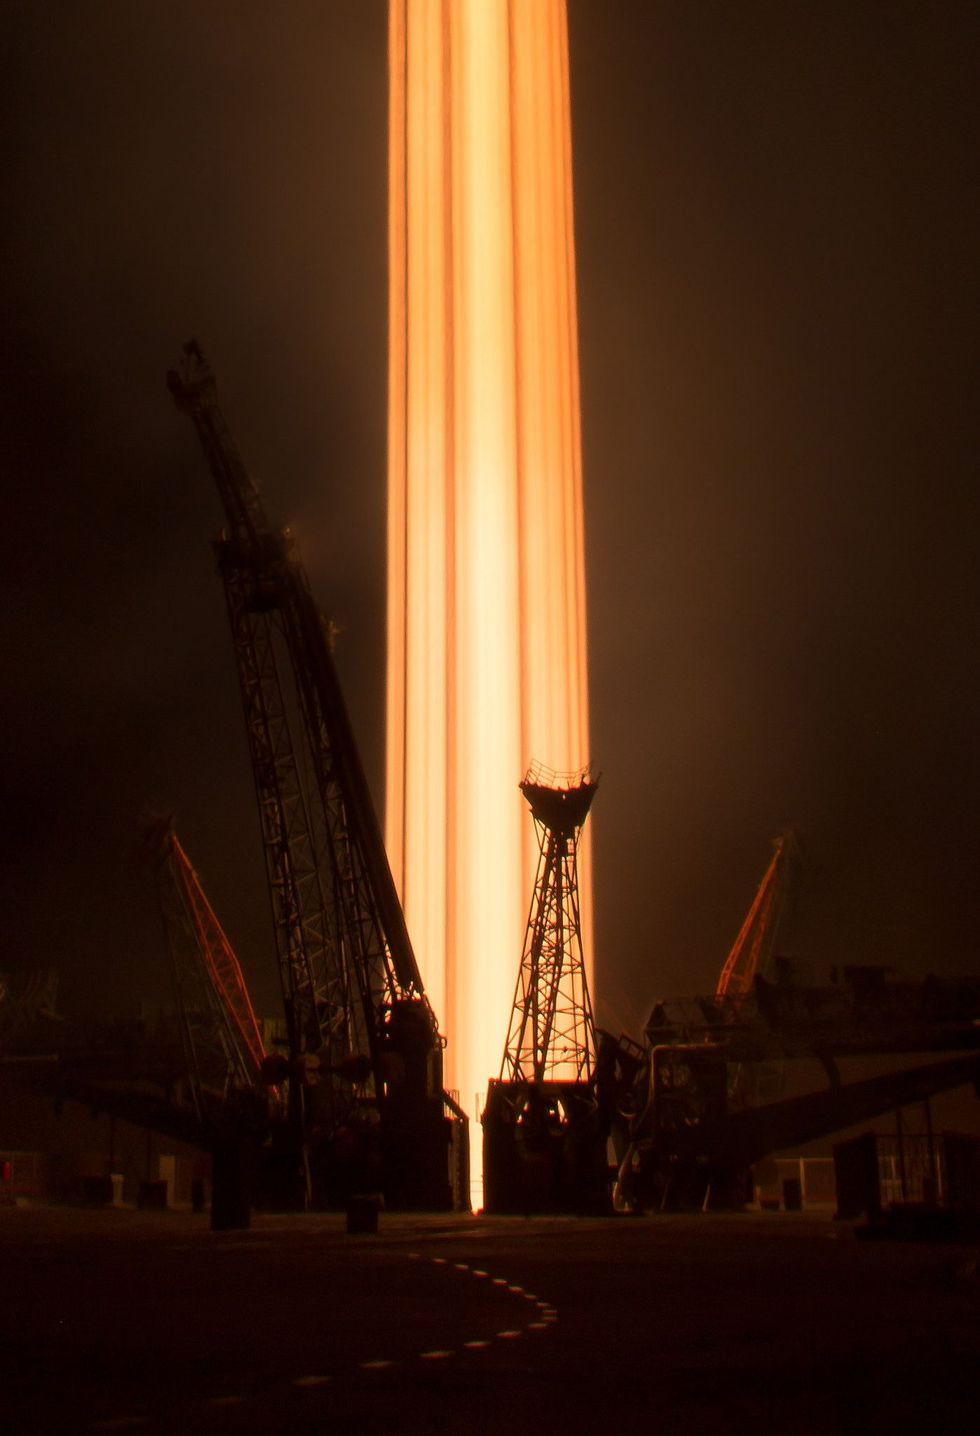 Een foto die met een lange sluitertijd is genomen toont de lancering van de Sojoezraket